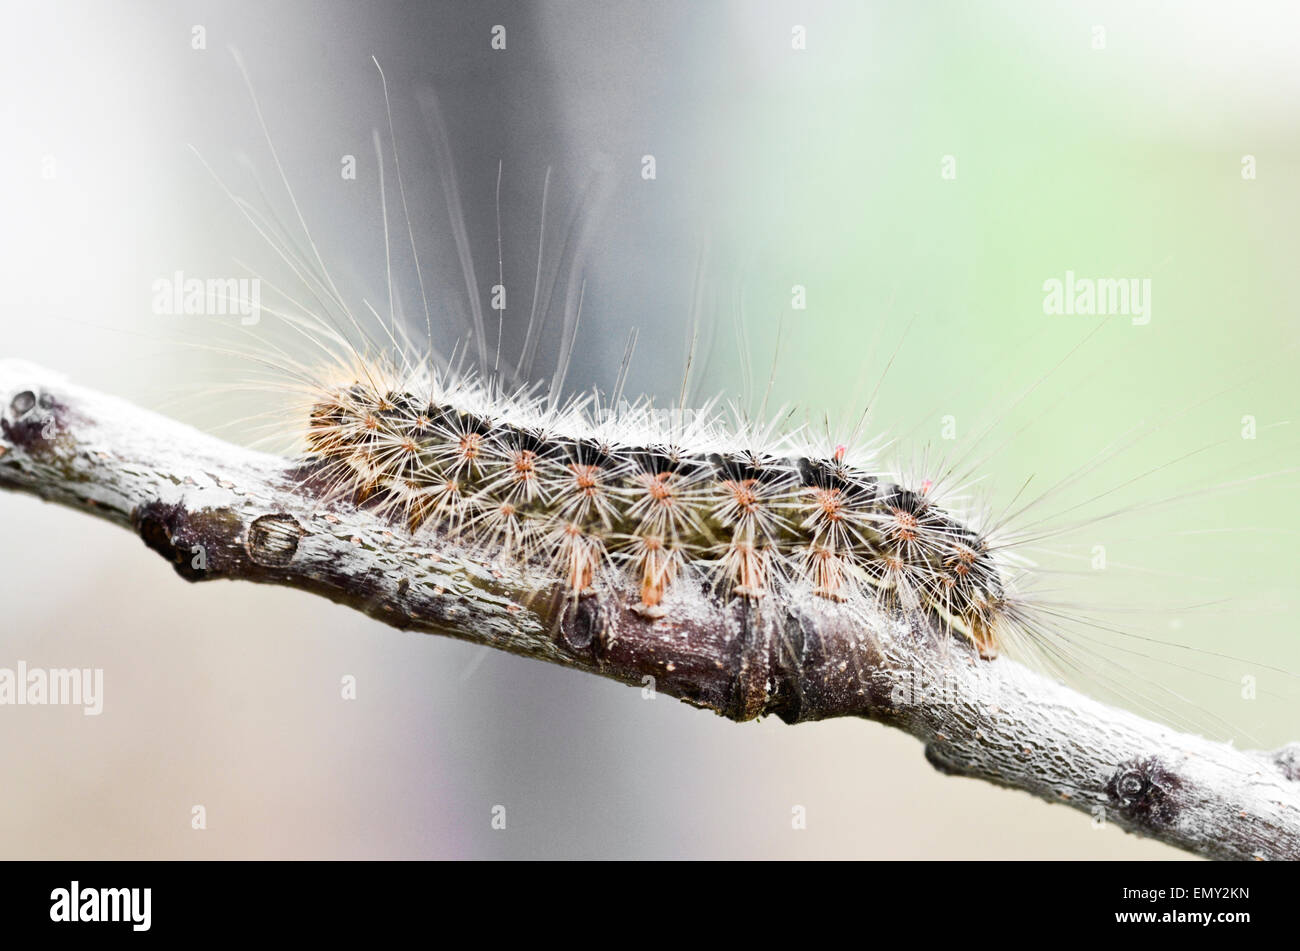 https://c8.alamy.com/comp/EMY2KN/white-cedar-moth-caterpillar-leptocneria-reducta-EMY2KN.jpg